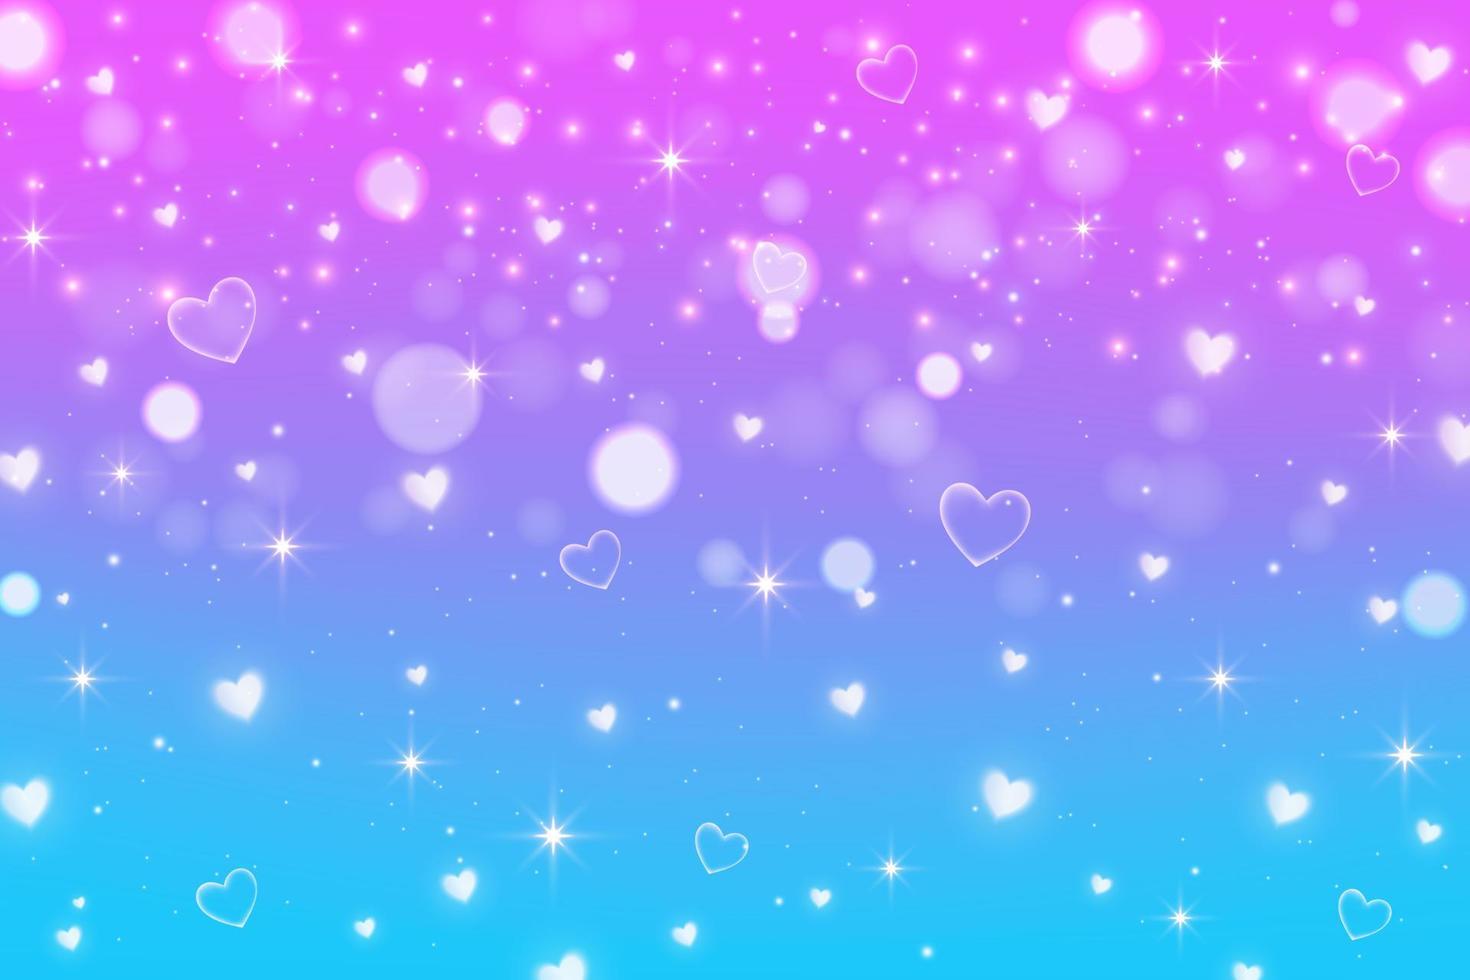 ilustración de fantasía con cielo de arco iris con estrellas y corazones. telón de fondo cósmico de unicornio abstracto. ilustración de vector de niña de dibujos animados.